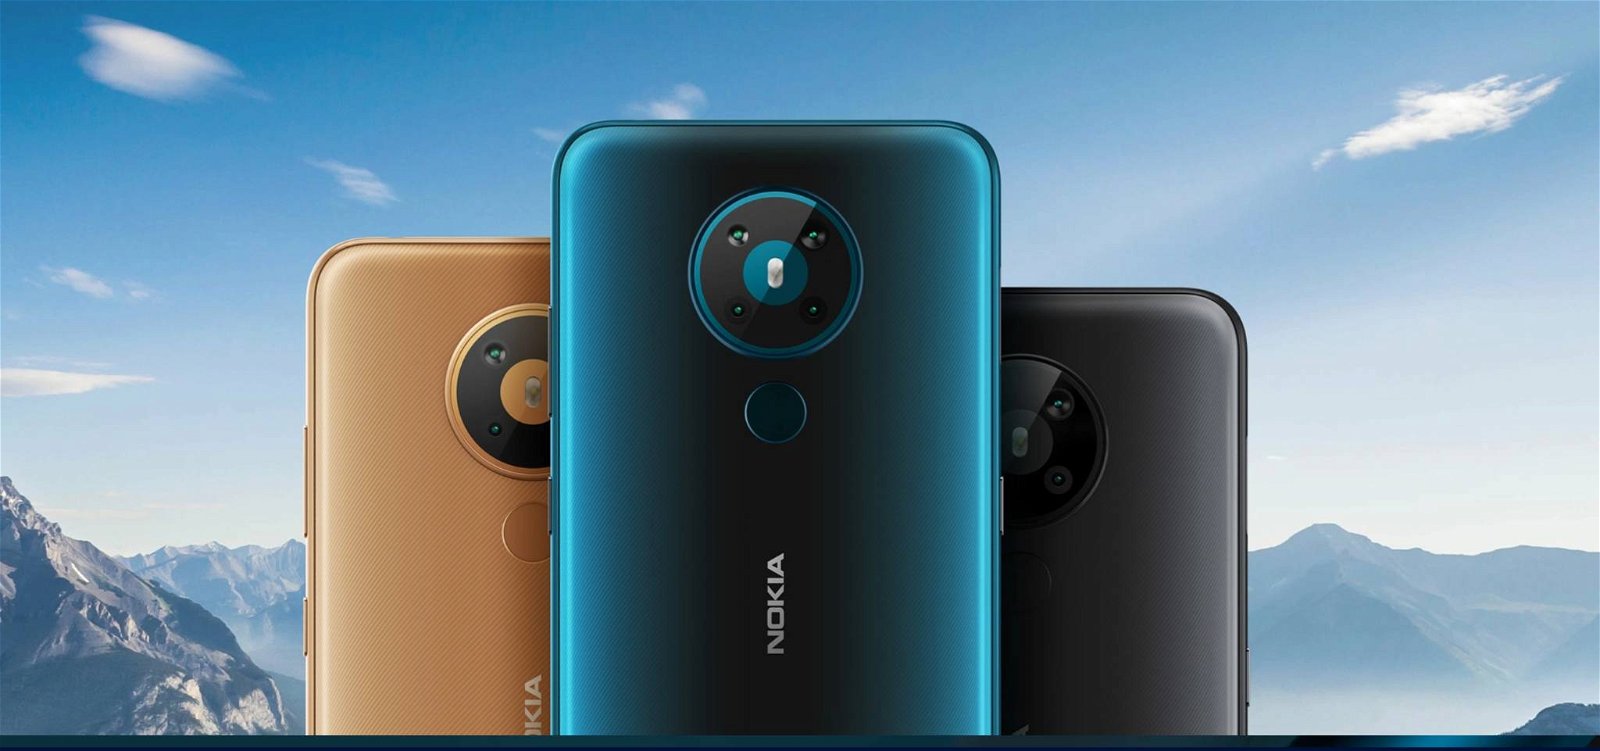 Immagine di Super offerta Amazon: uno smartphone Nokia con 4 GB di RAM a meno di 185 euro!